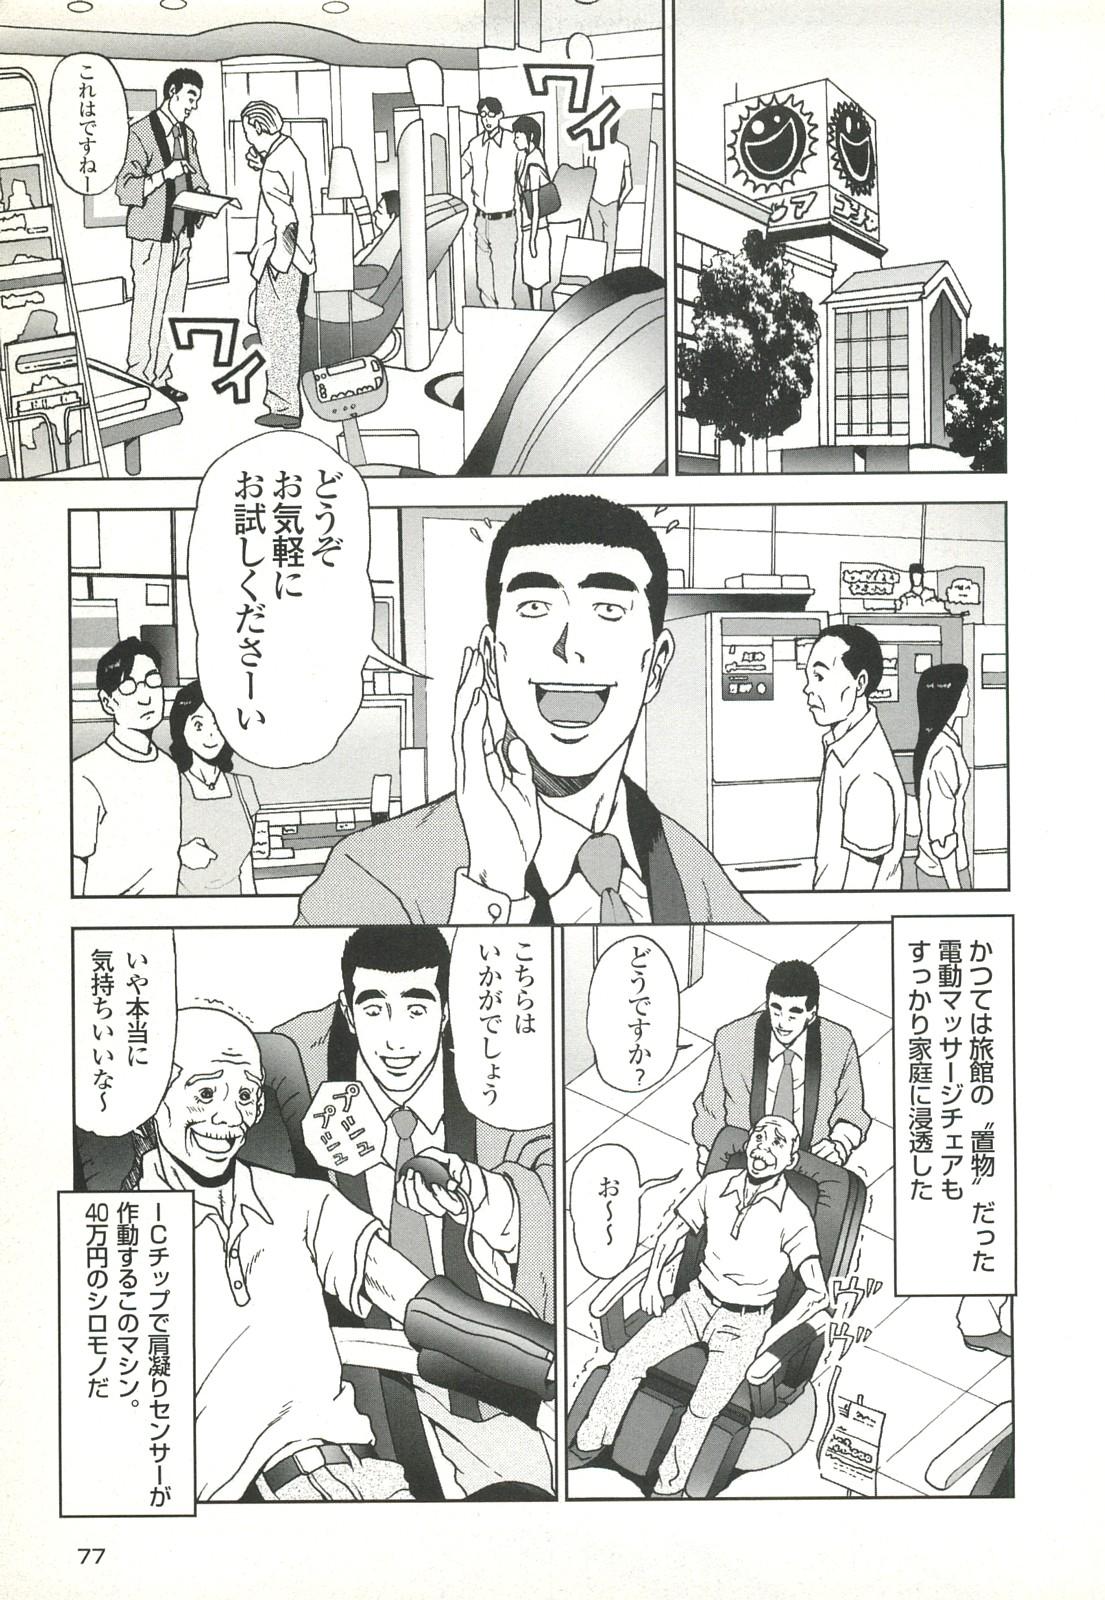 コミック裏モノJAPAN Vol.18 今井のりたつスペシャル号 76